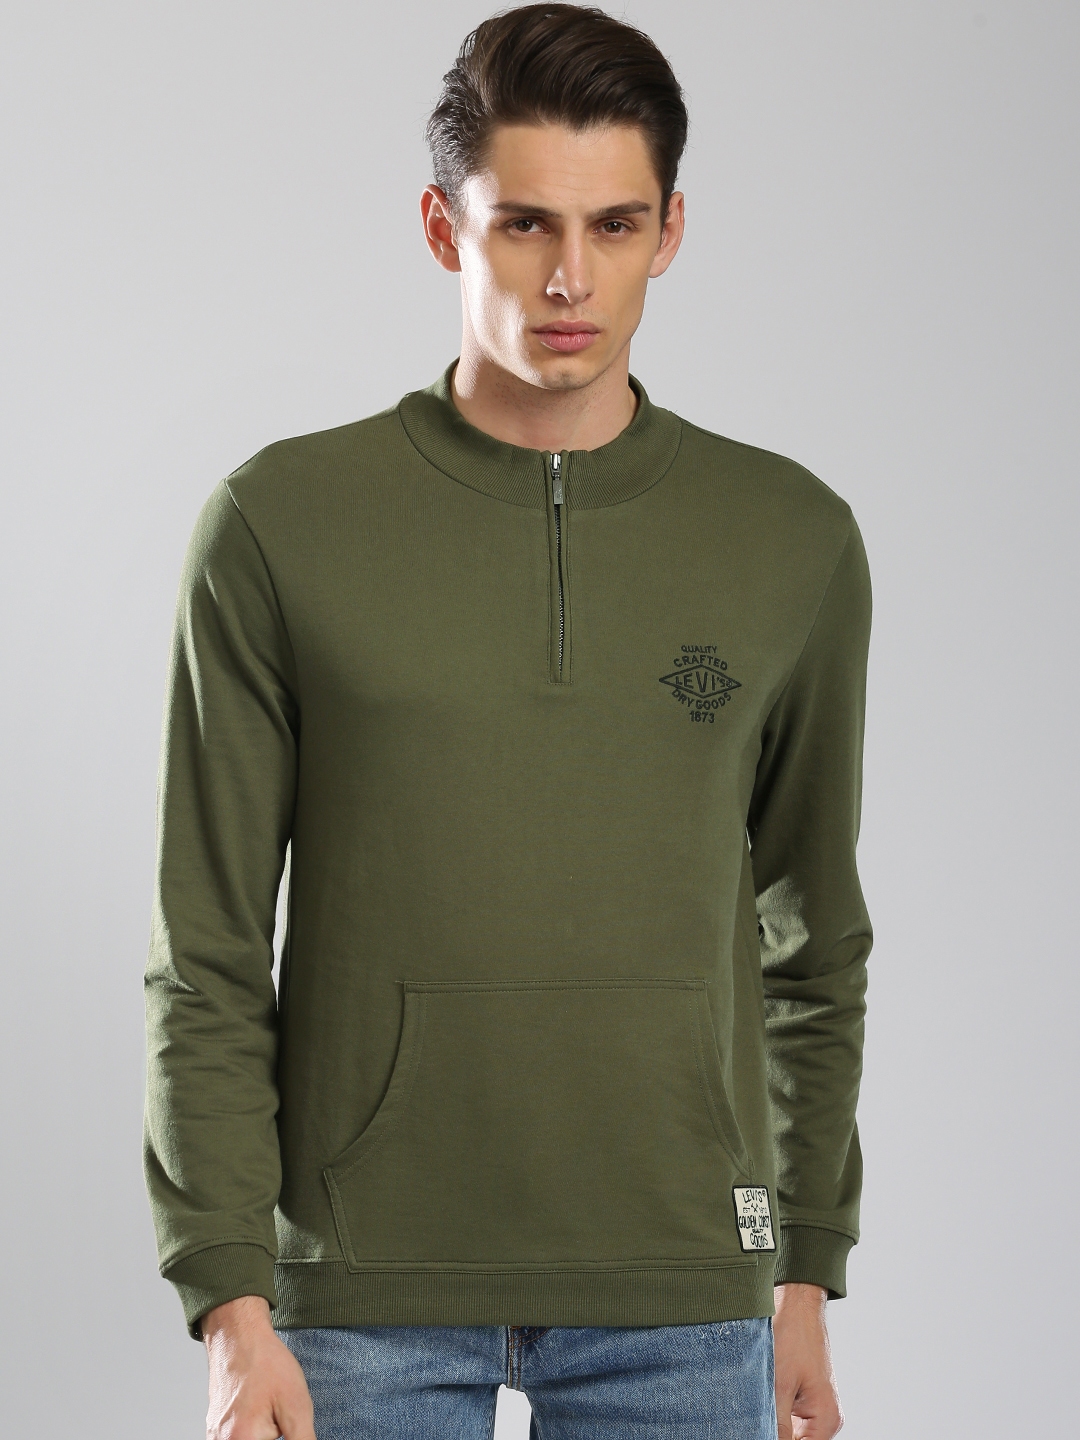 Buy Levis Men Olive Green Solid Sweatshirt - Sweatshirts for Men 2189183 |  Myntra